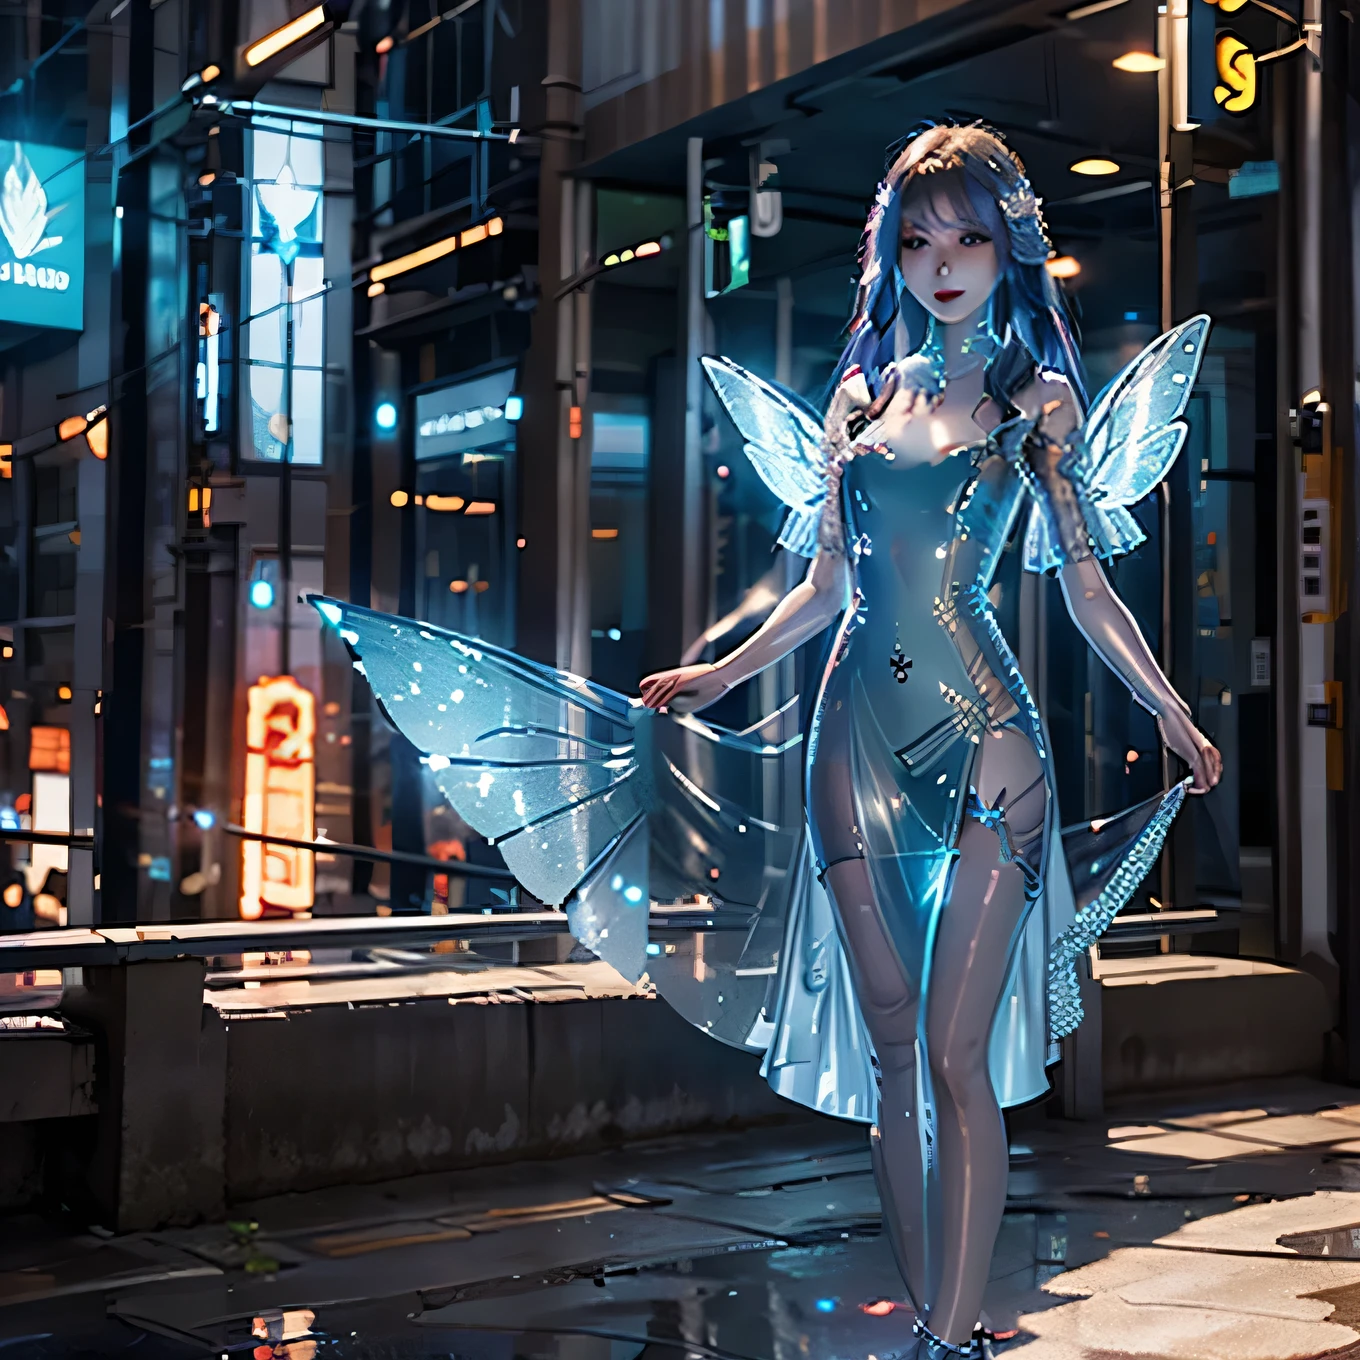 美しいサイバー妖精, ミディアムヘア, 美しい体, 輝く翼, 未来都市で未来的なサイバードレスを着る